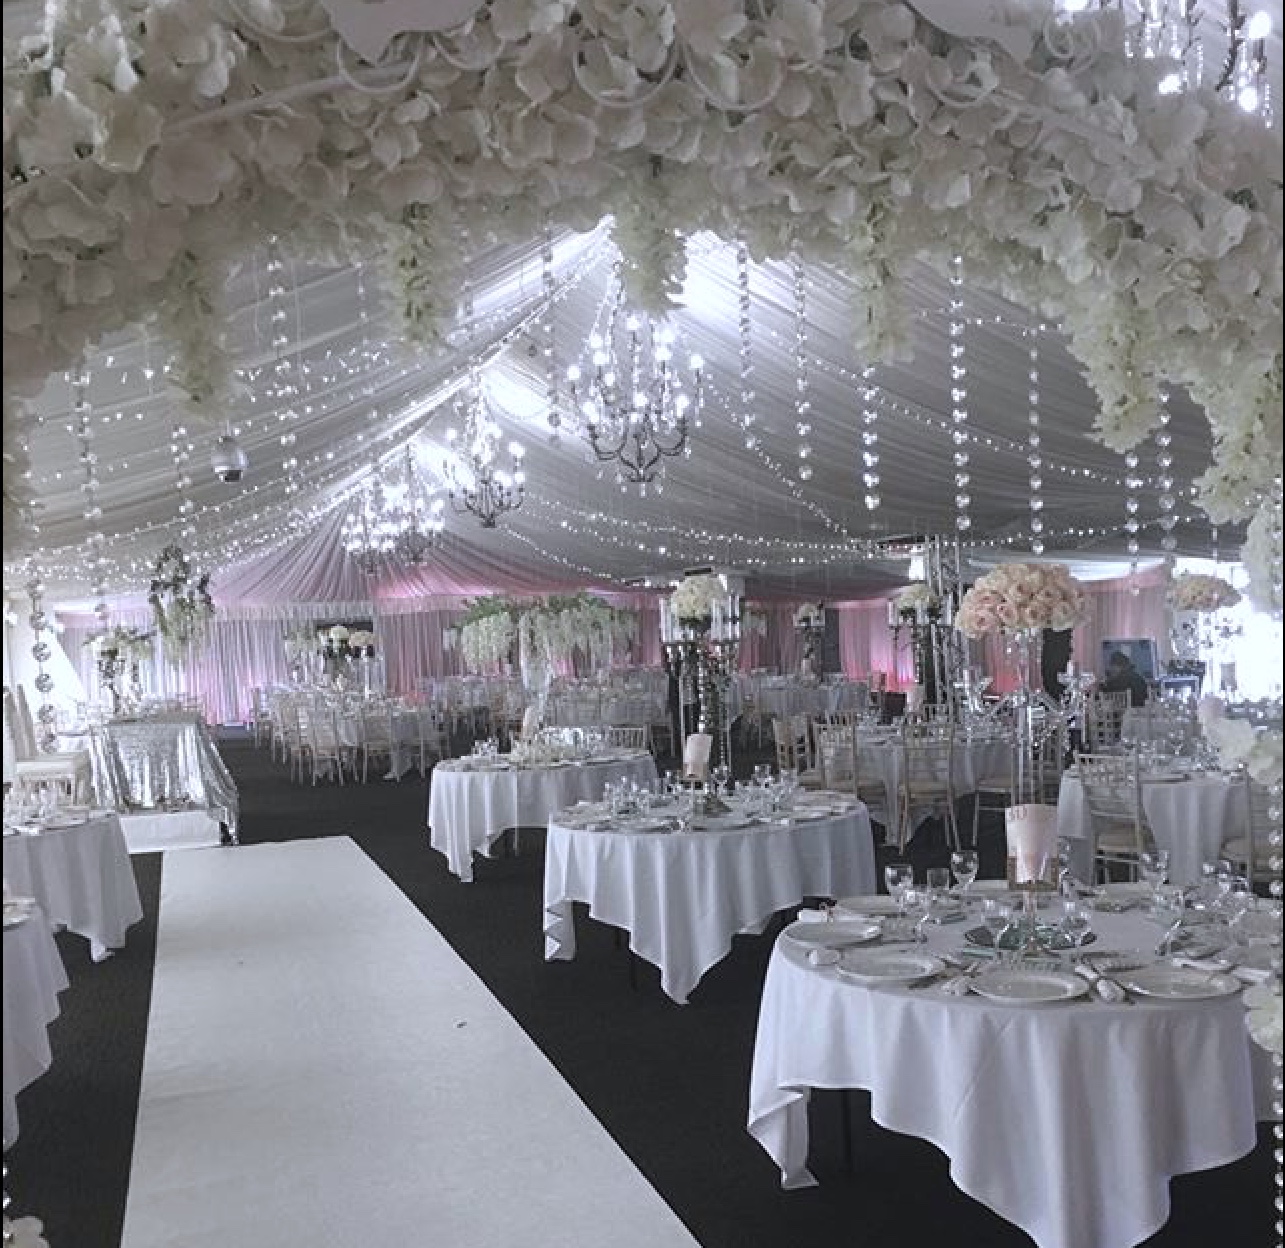  Floral wedding arch